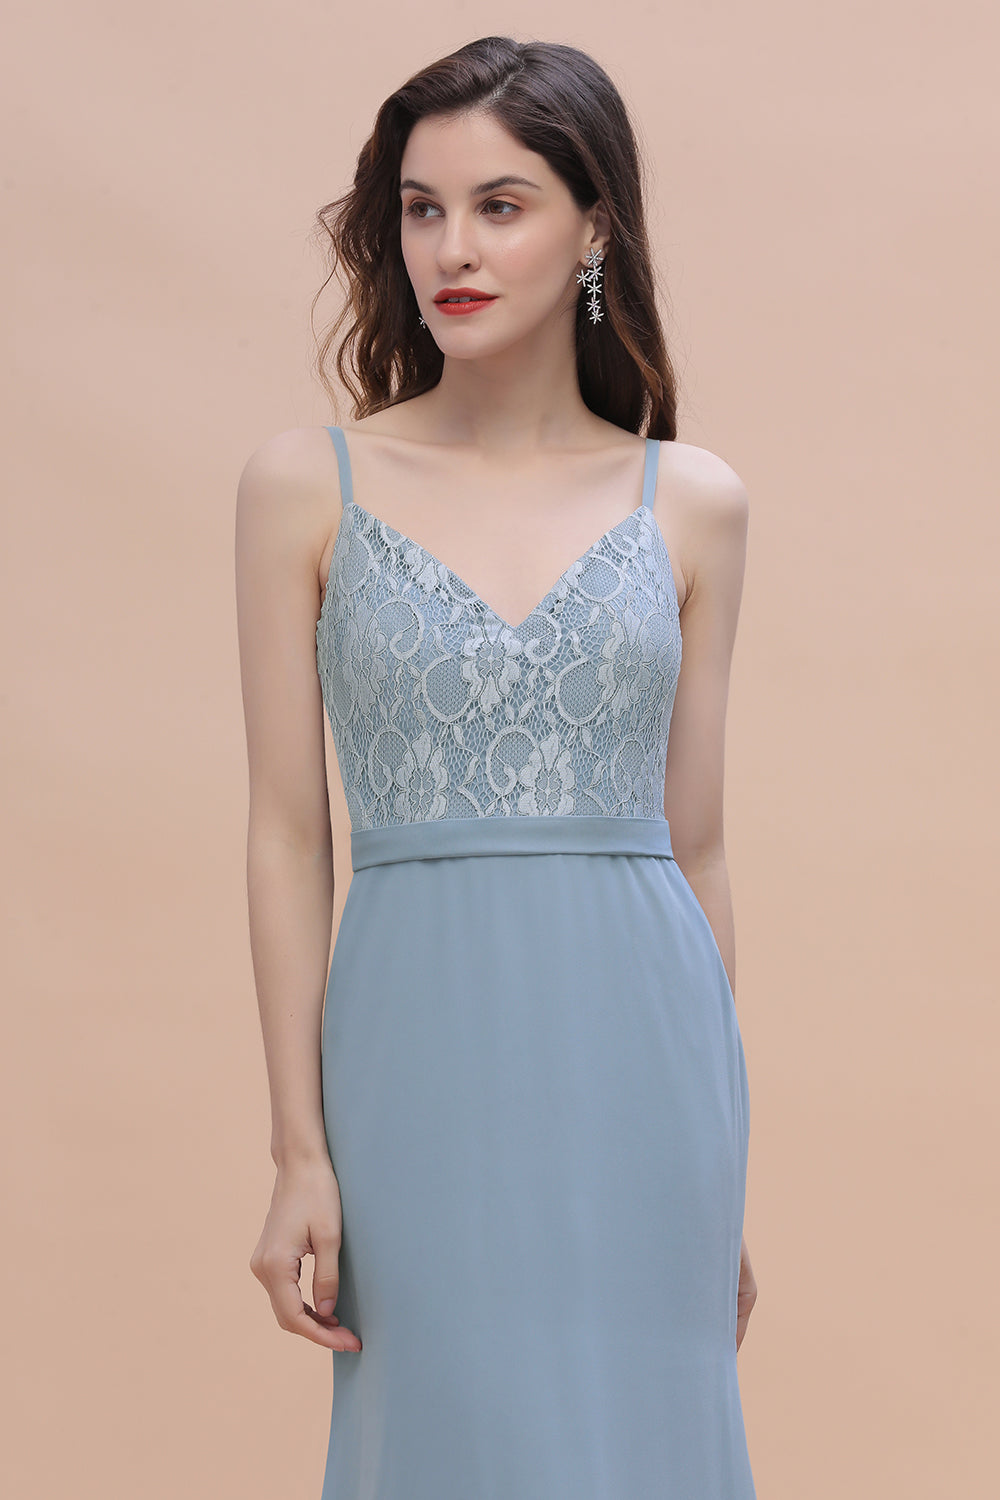 Suchen Sie Steel Blue Brautjungfernkleider Lang Chiffon online bei babyonlinedress.de. Schlichtes Abendkleid für Sie maß geschneidert kaufen.